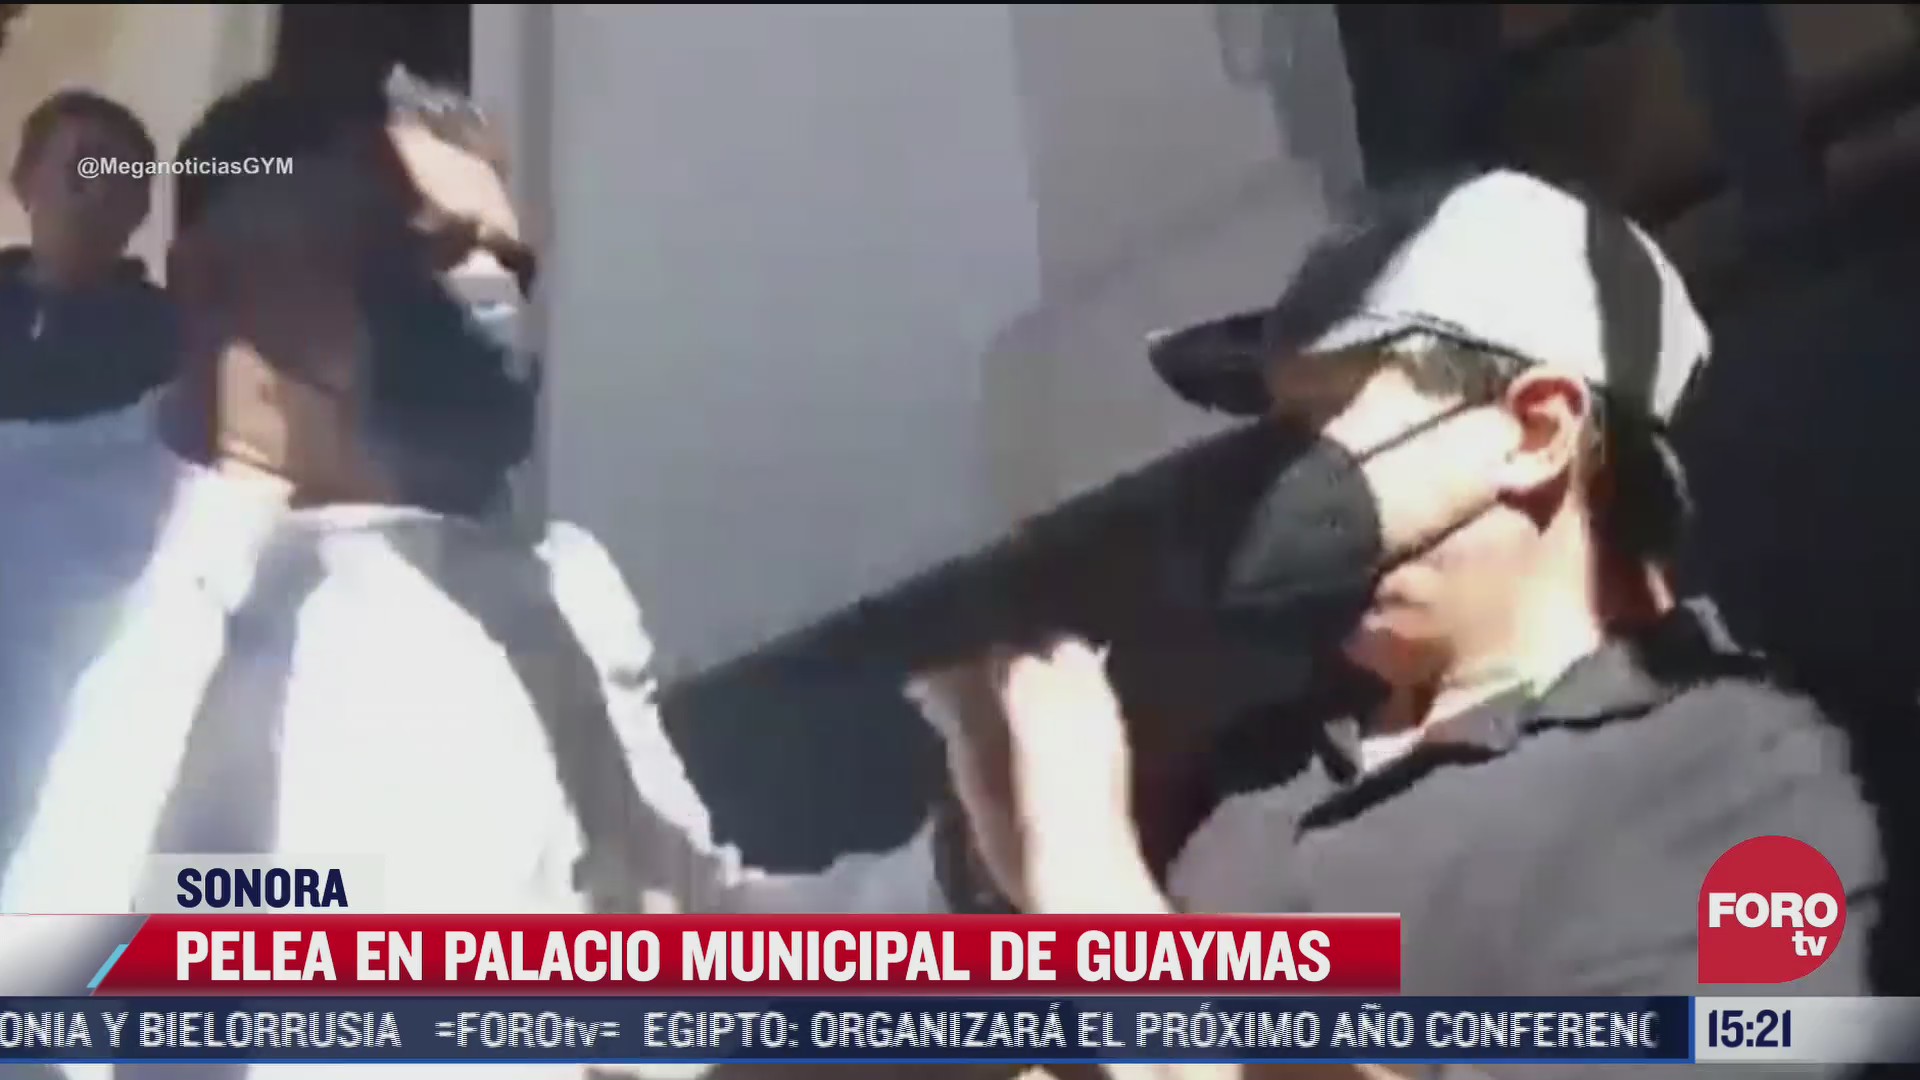 protesta en palacio municipal de guaymas sonora termina en pelea